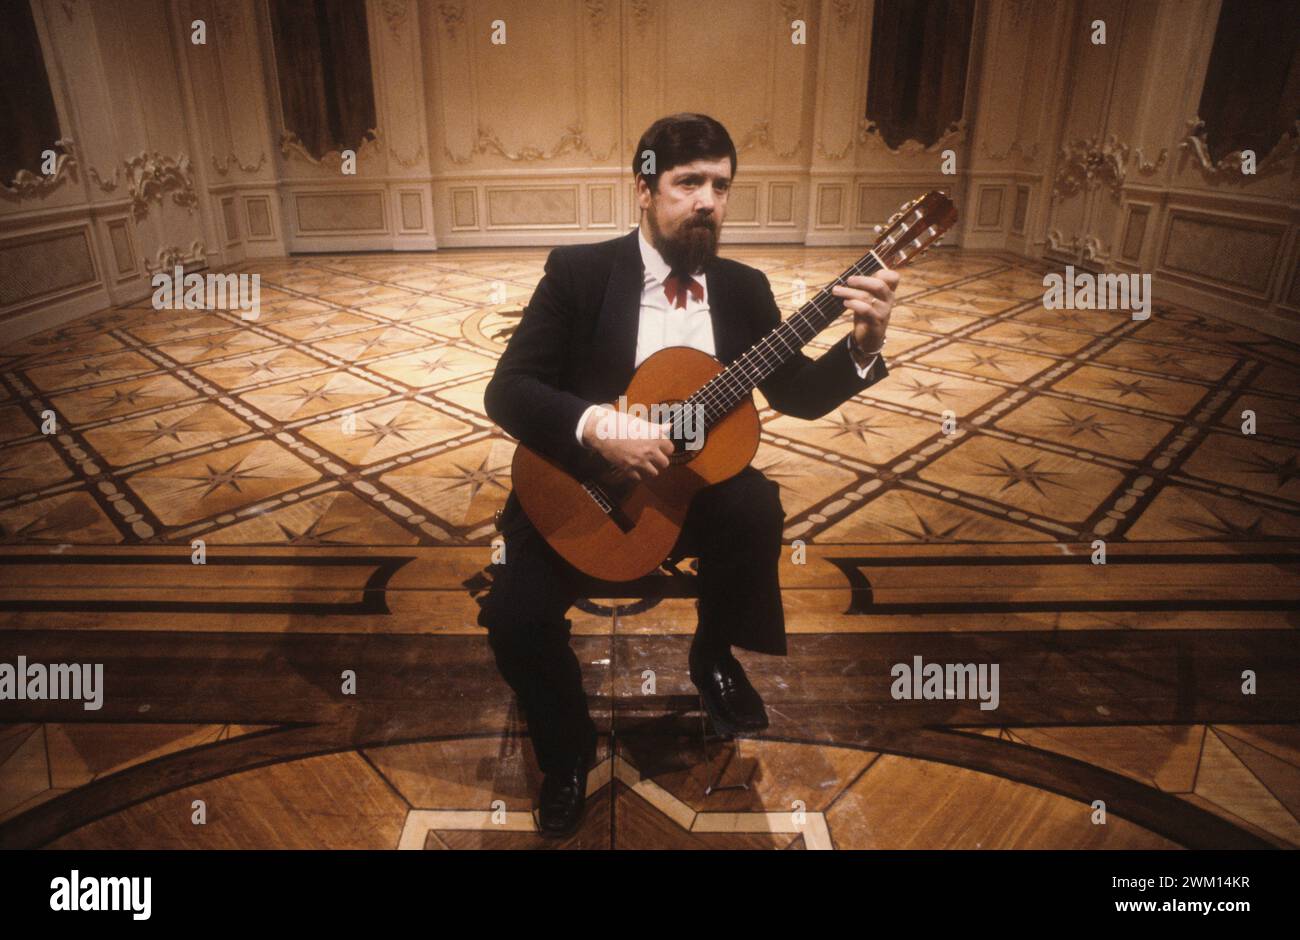 3828749 Oscar Ghiglia; (add.info.: Italian classical guitarist Oscar Ghiglia (1981) / Il chitarrista classico oscar Ghiglia (1981)); © Marcello Mencarini. All rights reserved 2024. Stock Photo